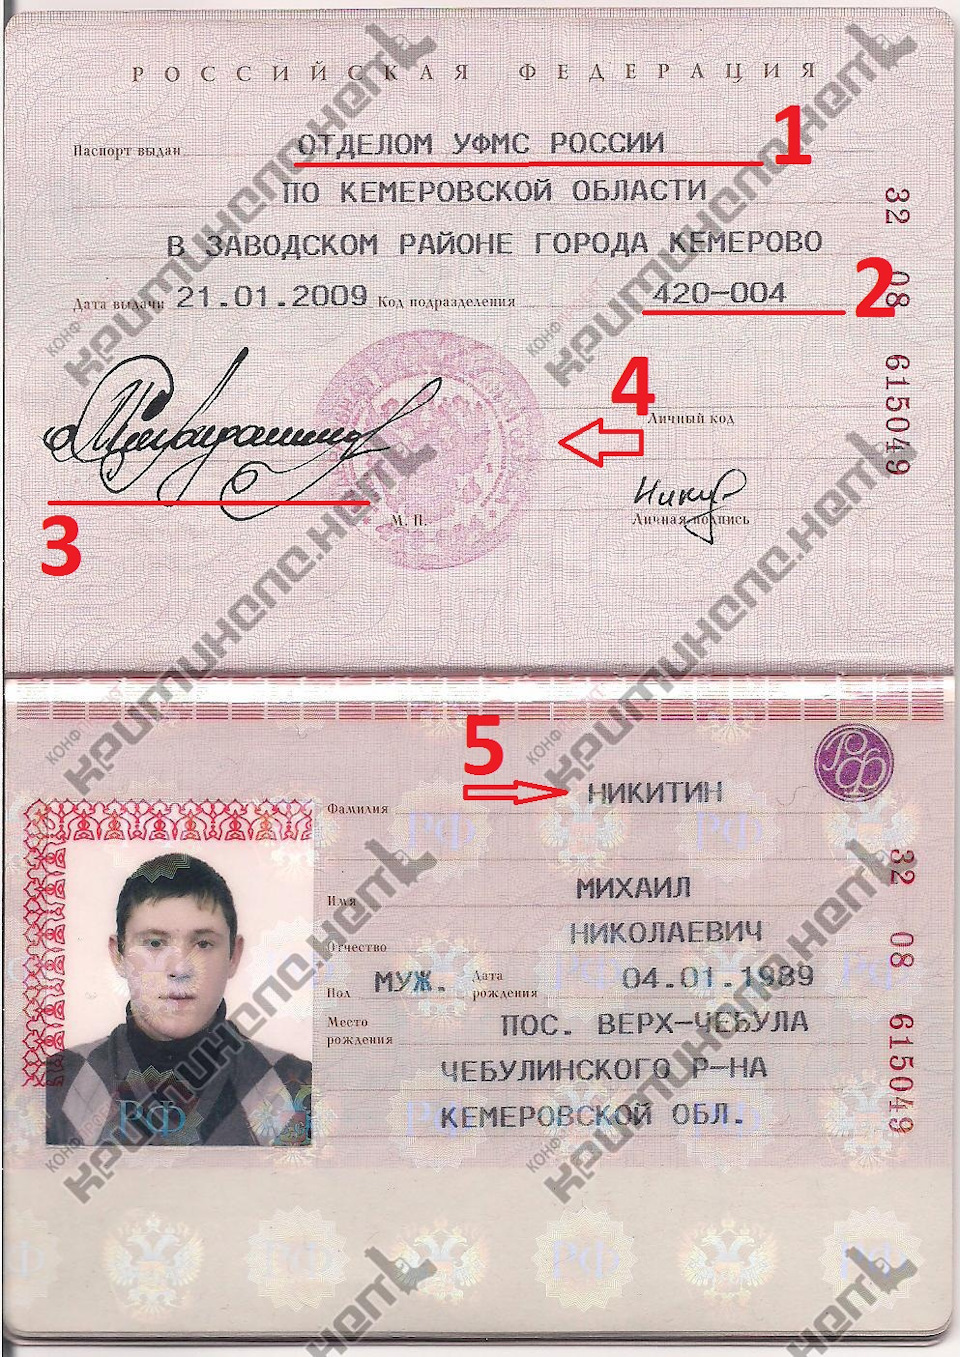 Сделать Фото Кемерово На Паспорт